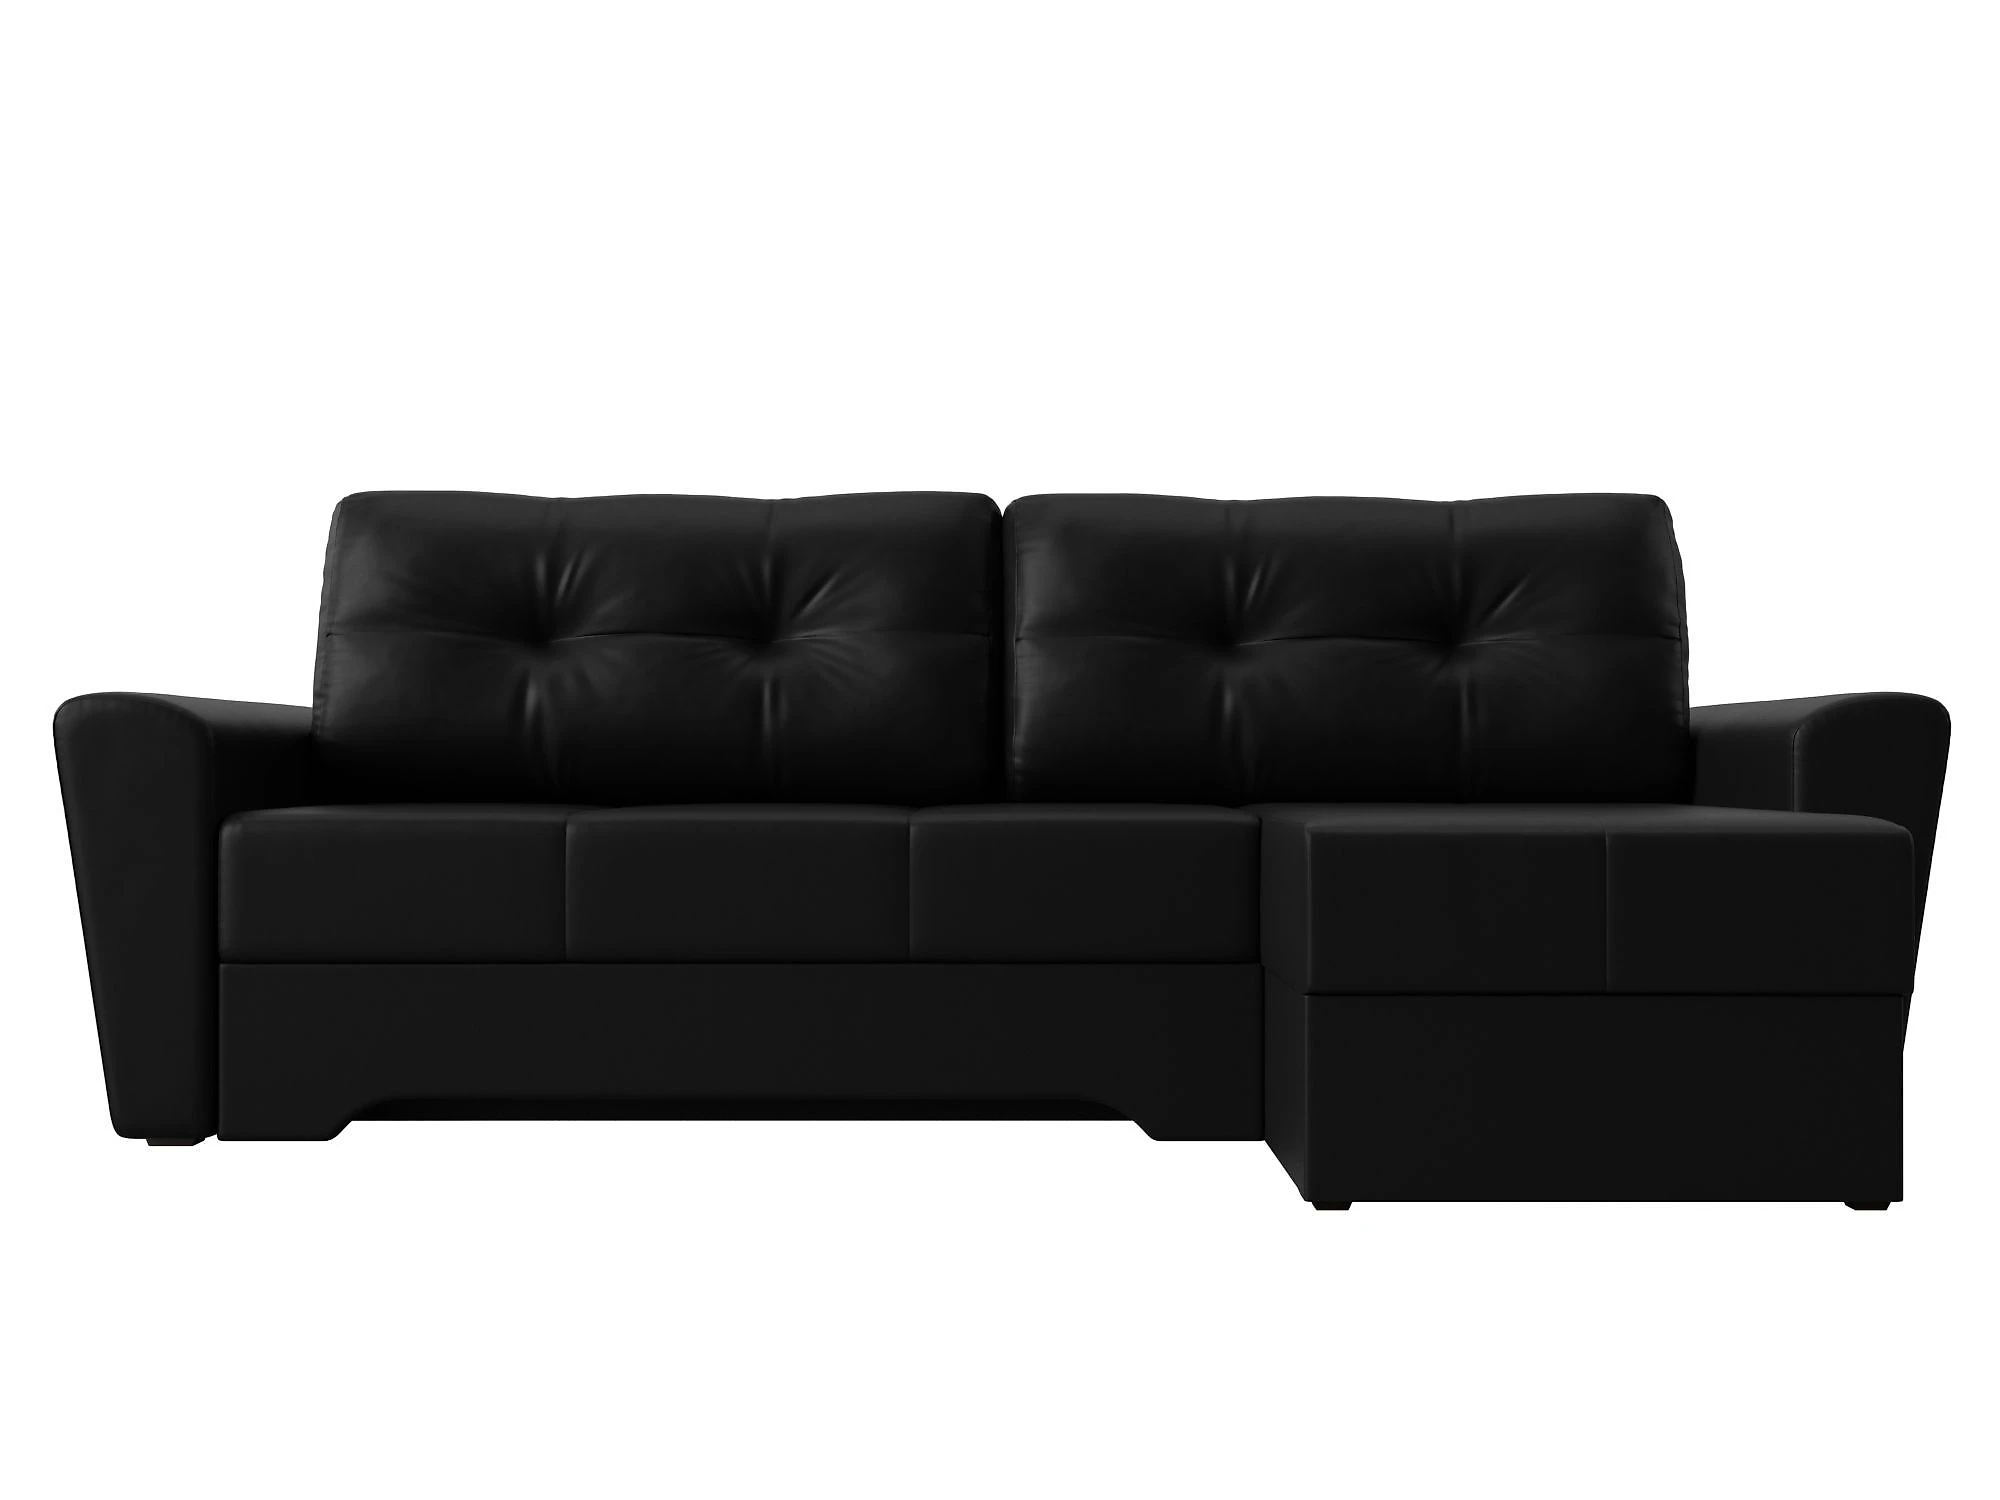  кожаный диван еврокнижка Амстердам Дизайн 19